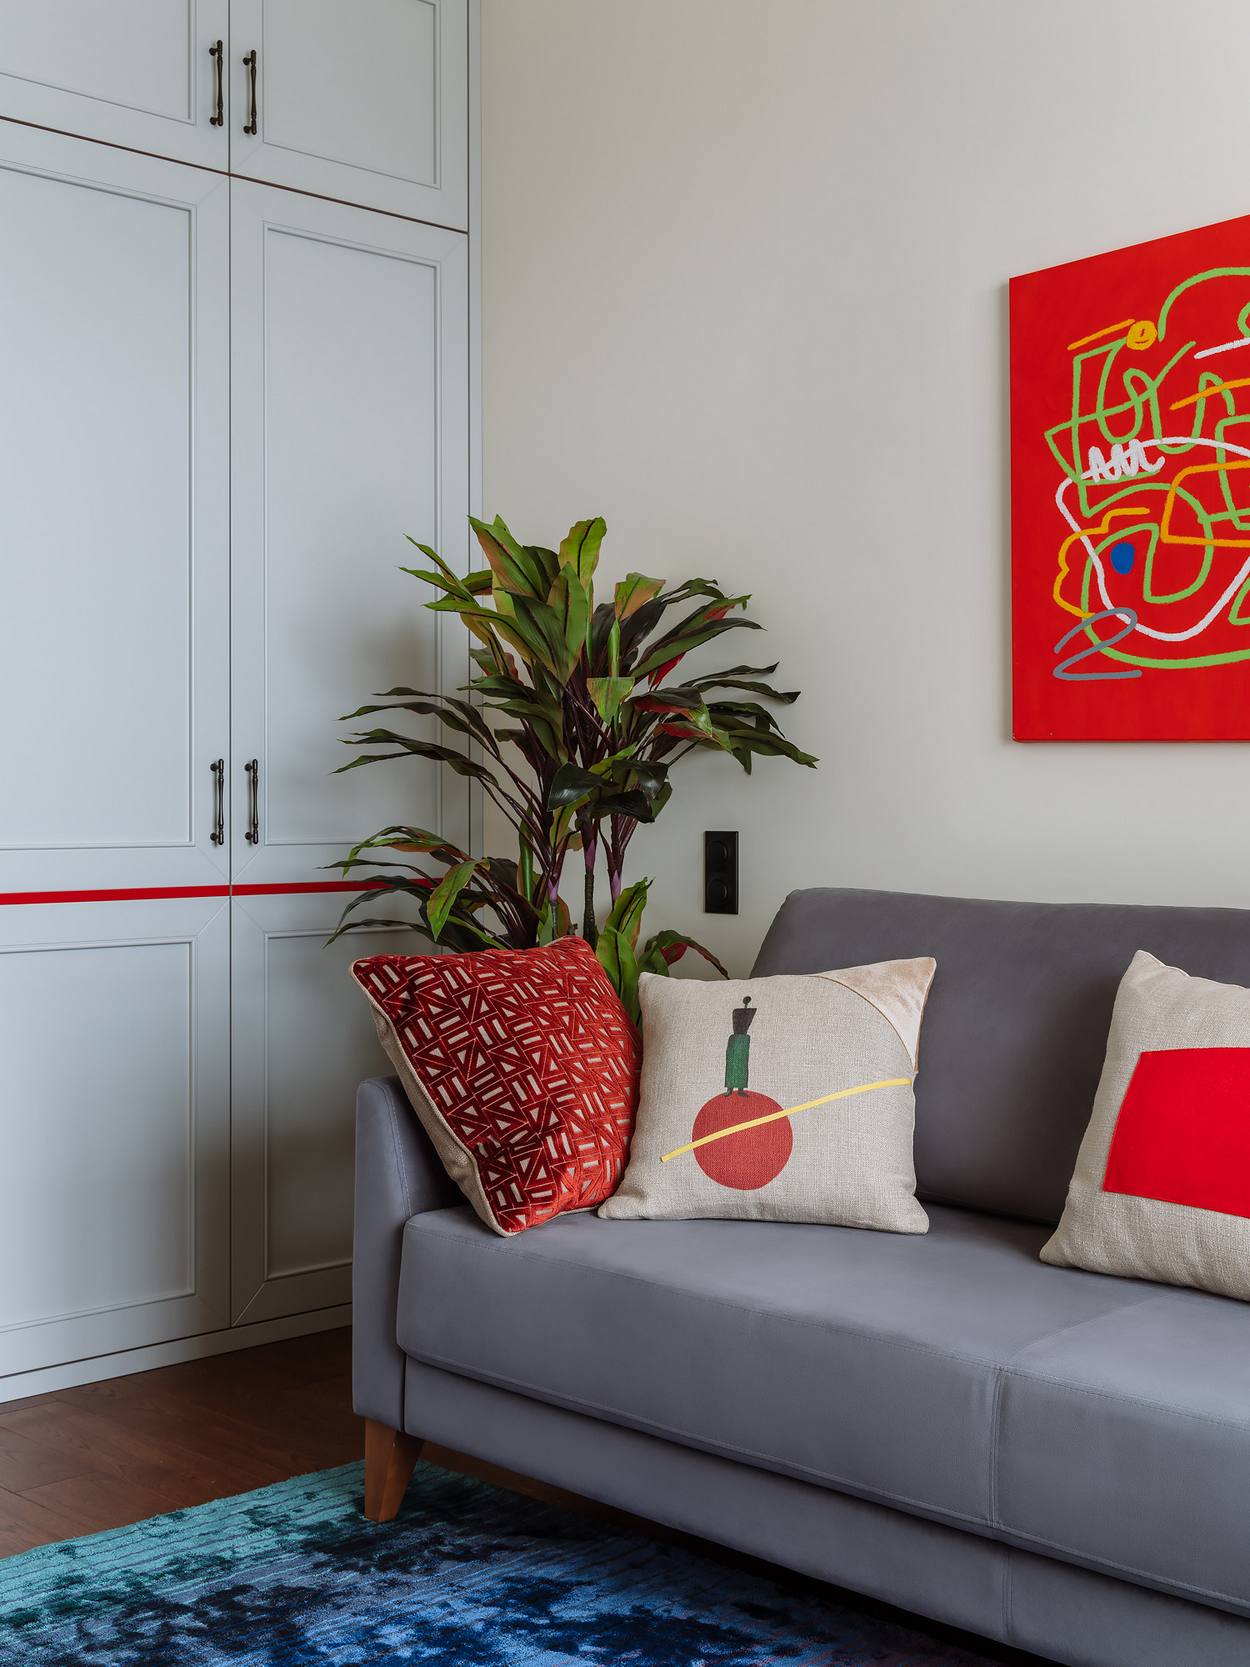 Những điểm nhấn màu đỏ được sử dụng một cách tiết chế nhằm mang đến sự quyến rũ cho không gian, từ những bức tranh trừu tượng trên tường, gối tựa họa tiết phong phú trên ghế sofa màu xám nhạt,...